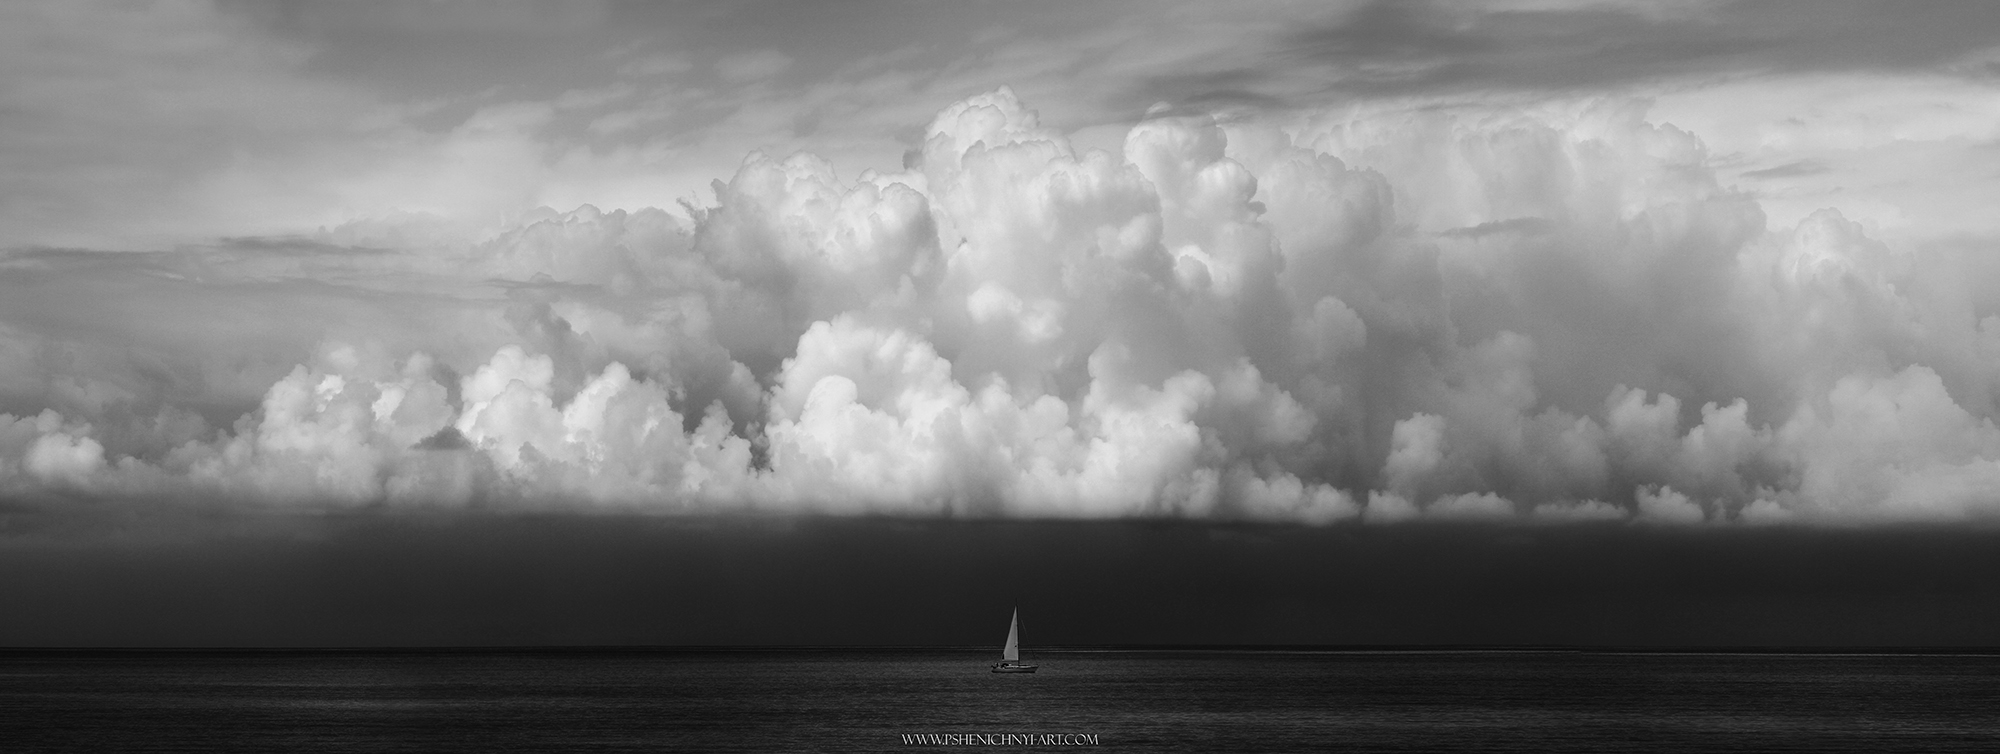 яхта, парус, море, горизонт, облака, одинокий, пейзаж, черно-белое, минимализм, Пшеничный Андрей